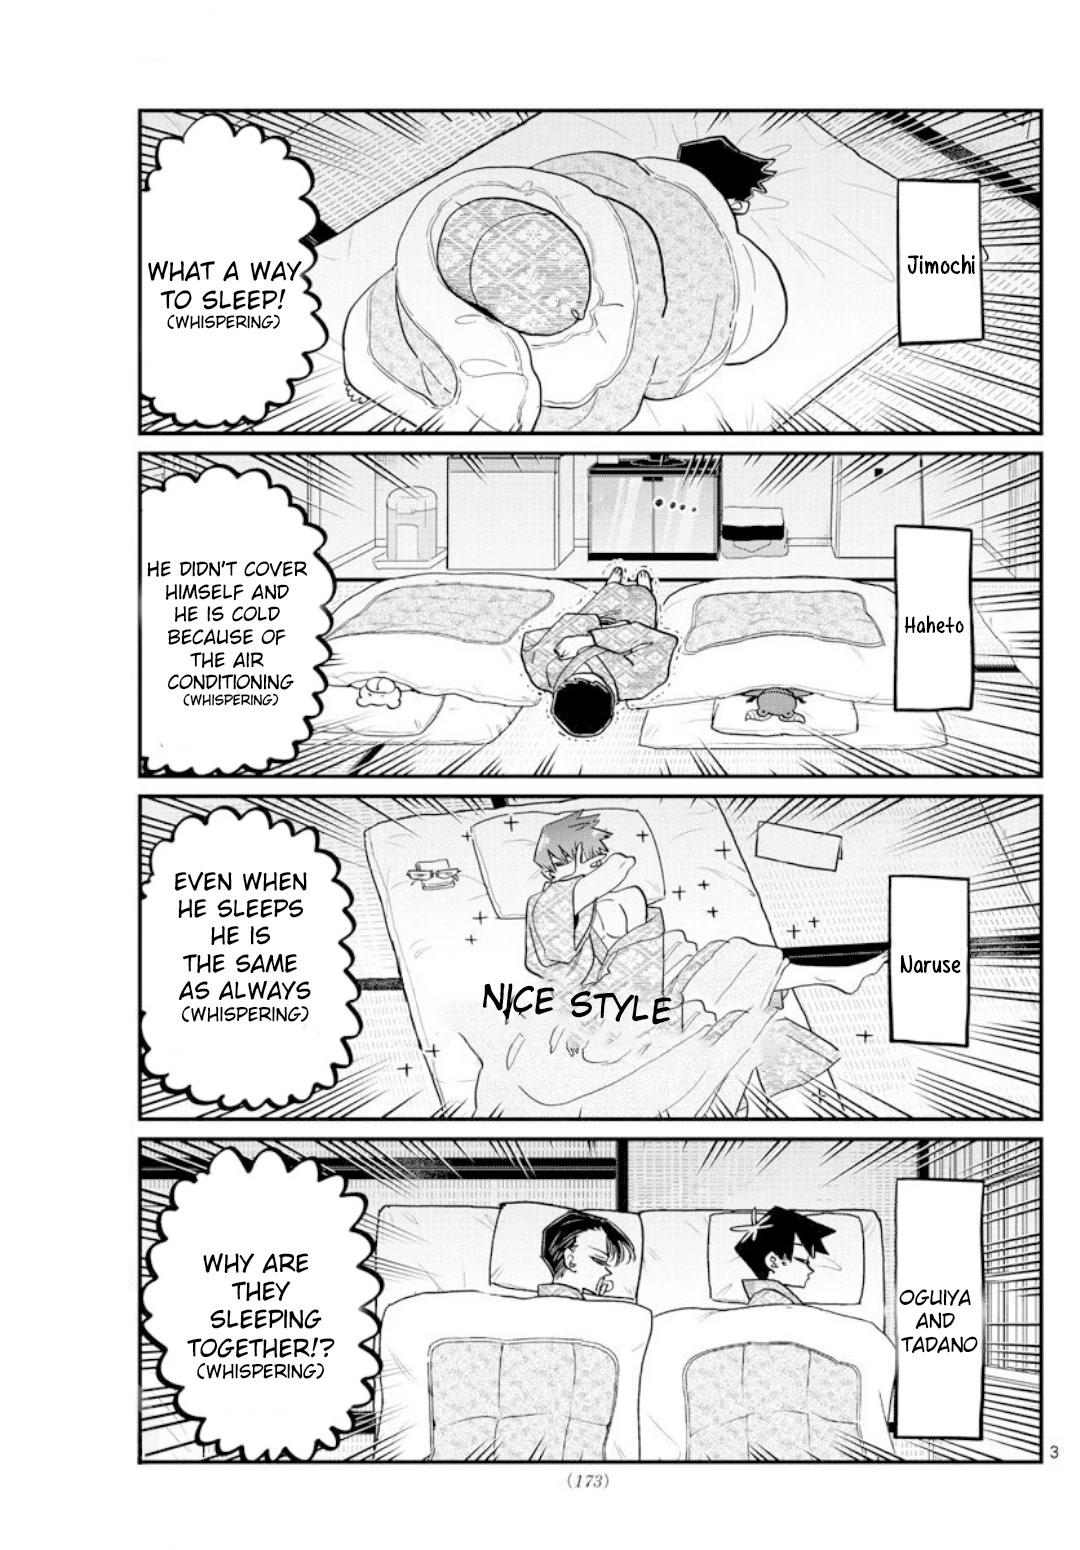 Komi Can't Communicate, Chapter 324 - Komi Can't Communicate Manga Online